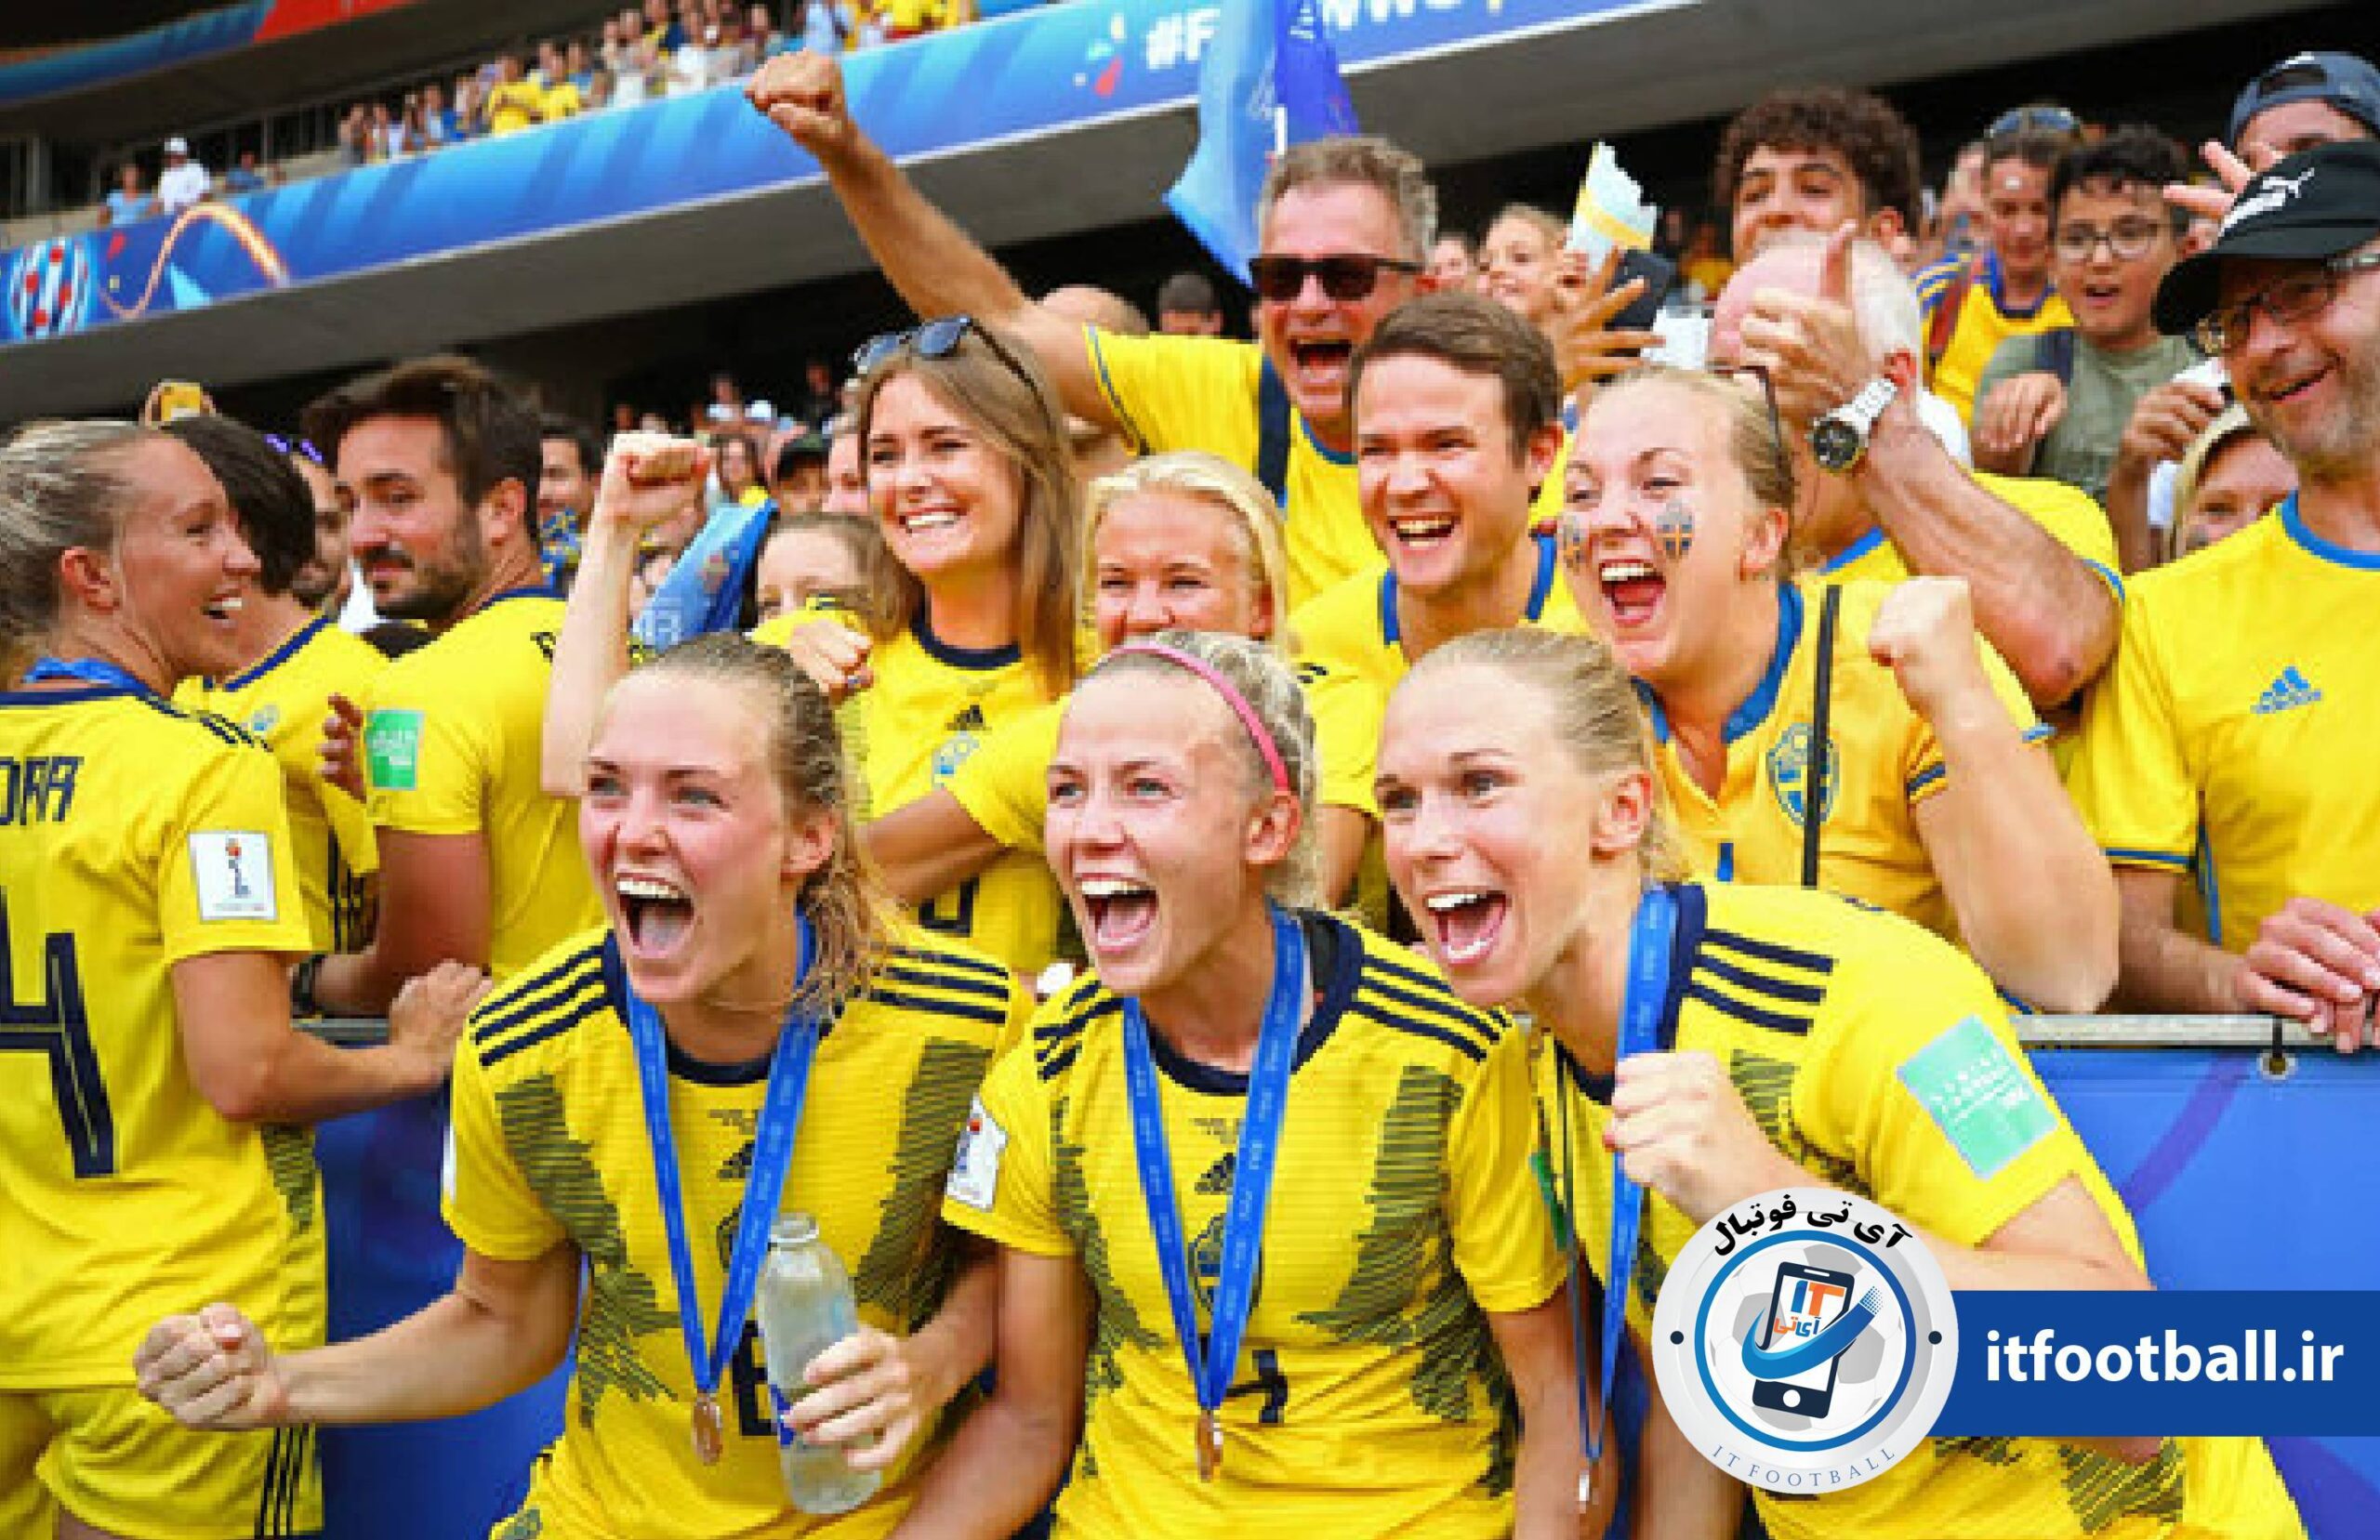 سوئد - آمریکا
آی تی فوتبال